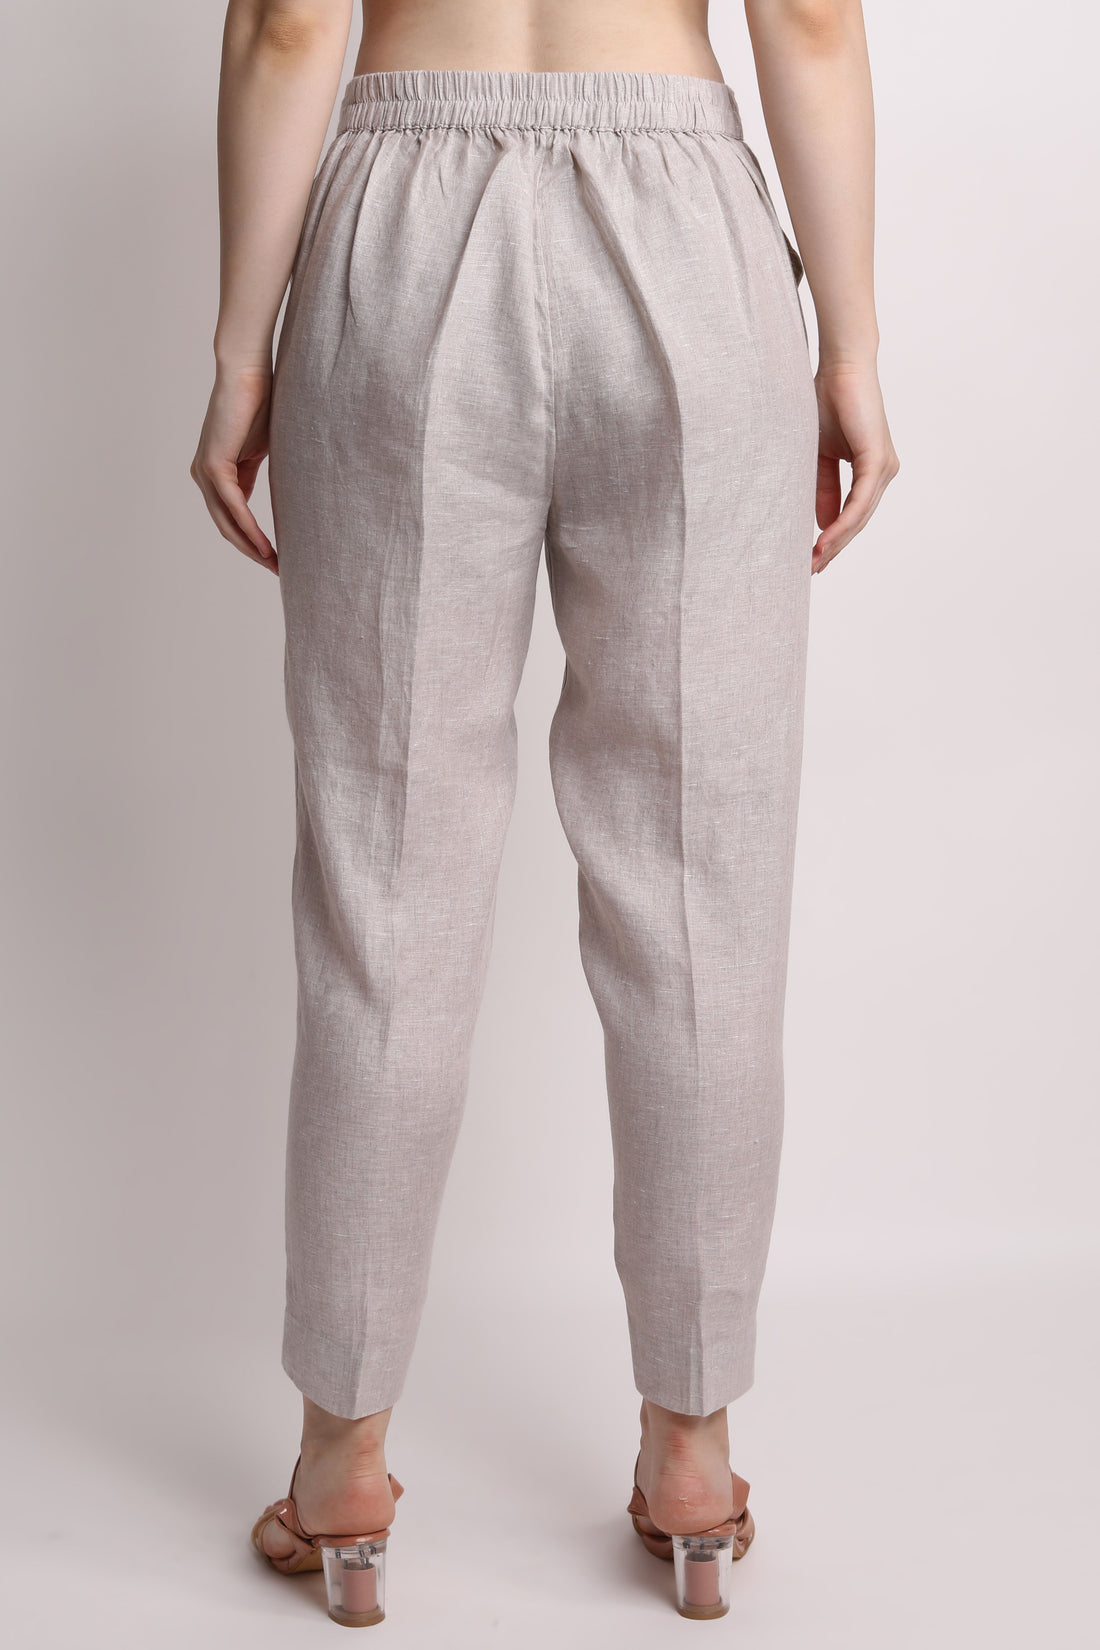 Beige Pencil Pants – Linen Bloom store